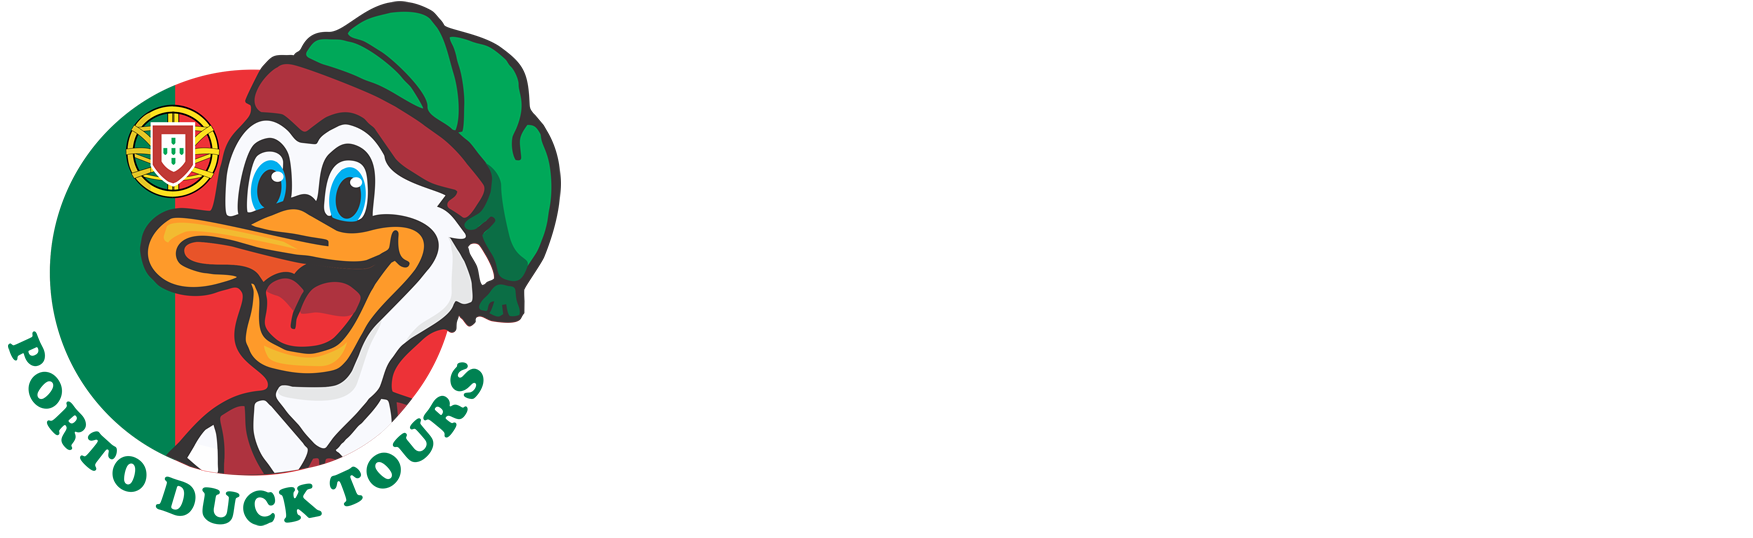 PORTO DUCK TOURS